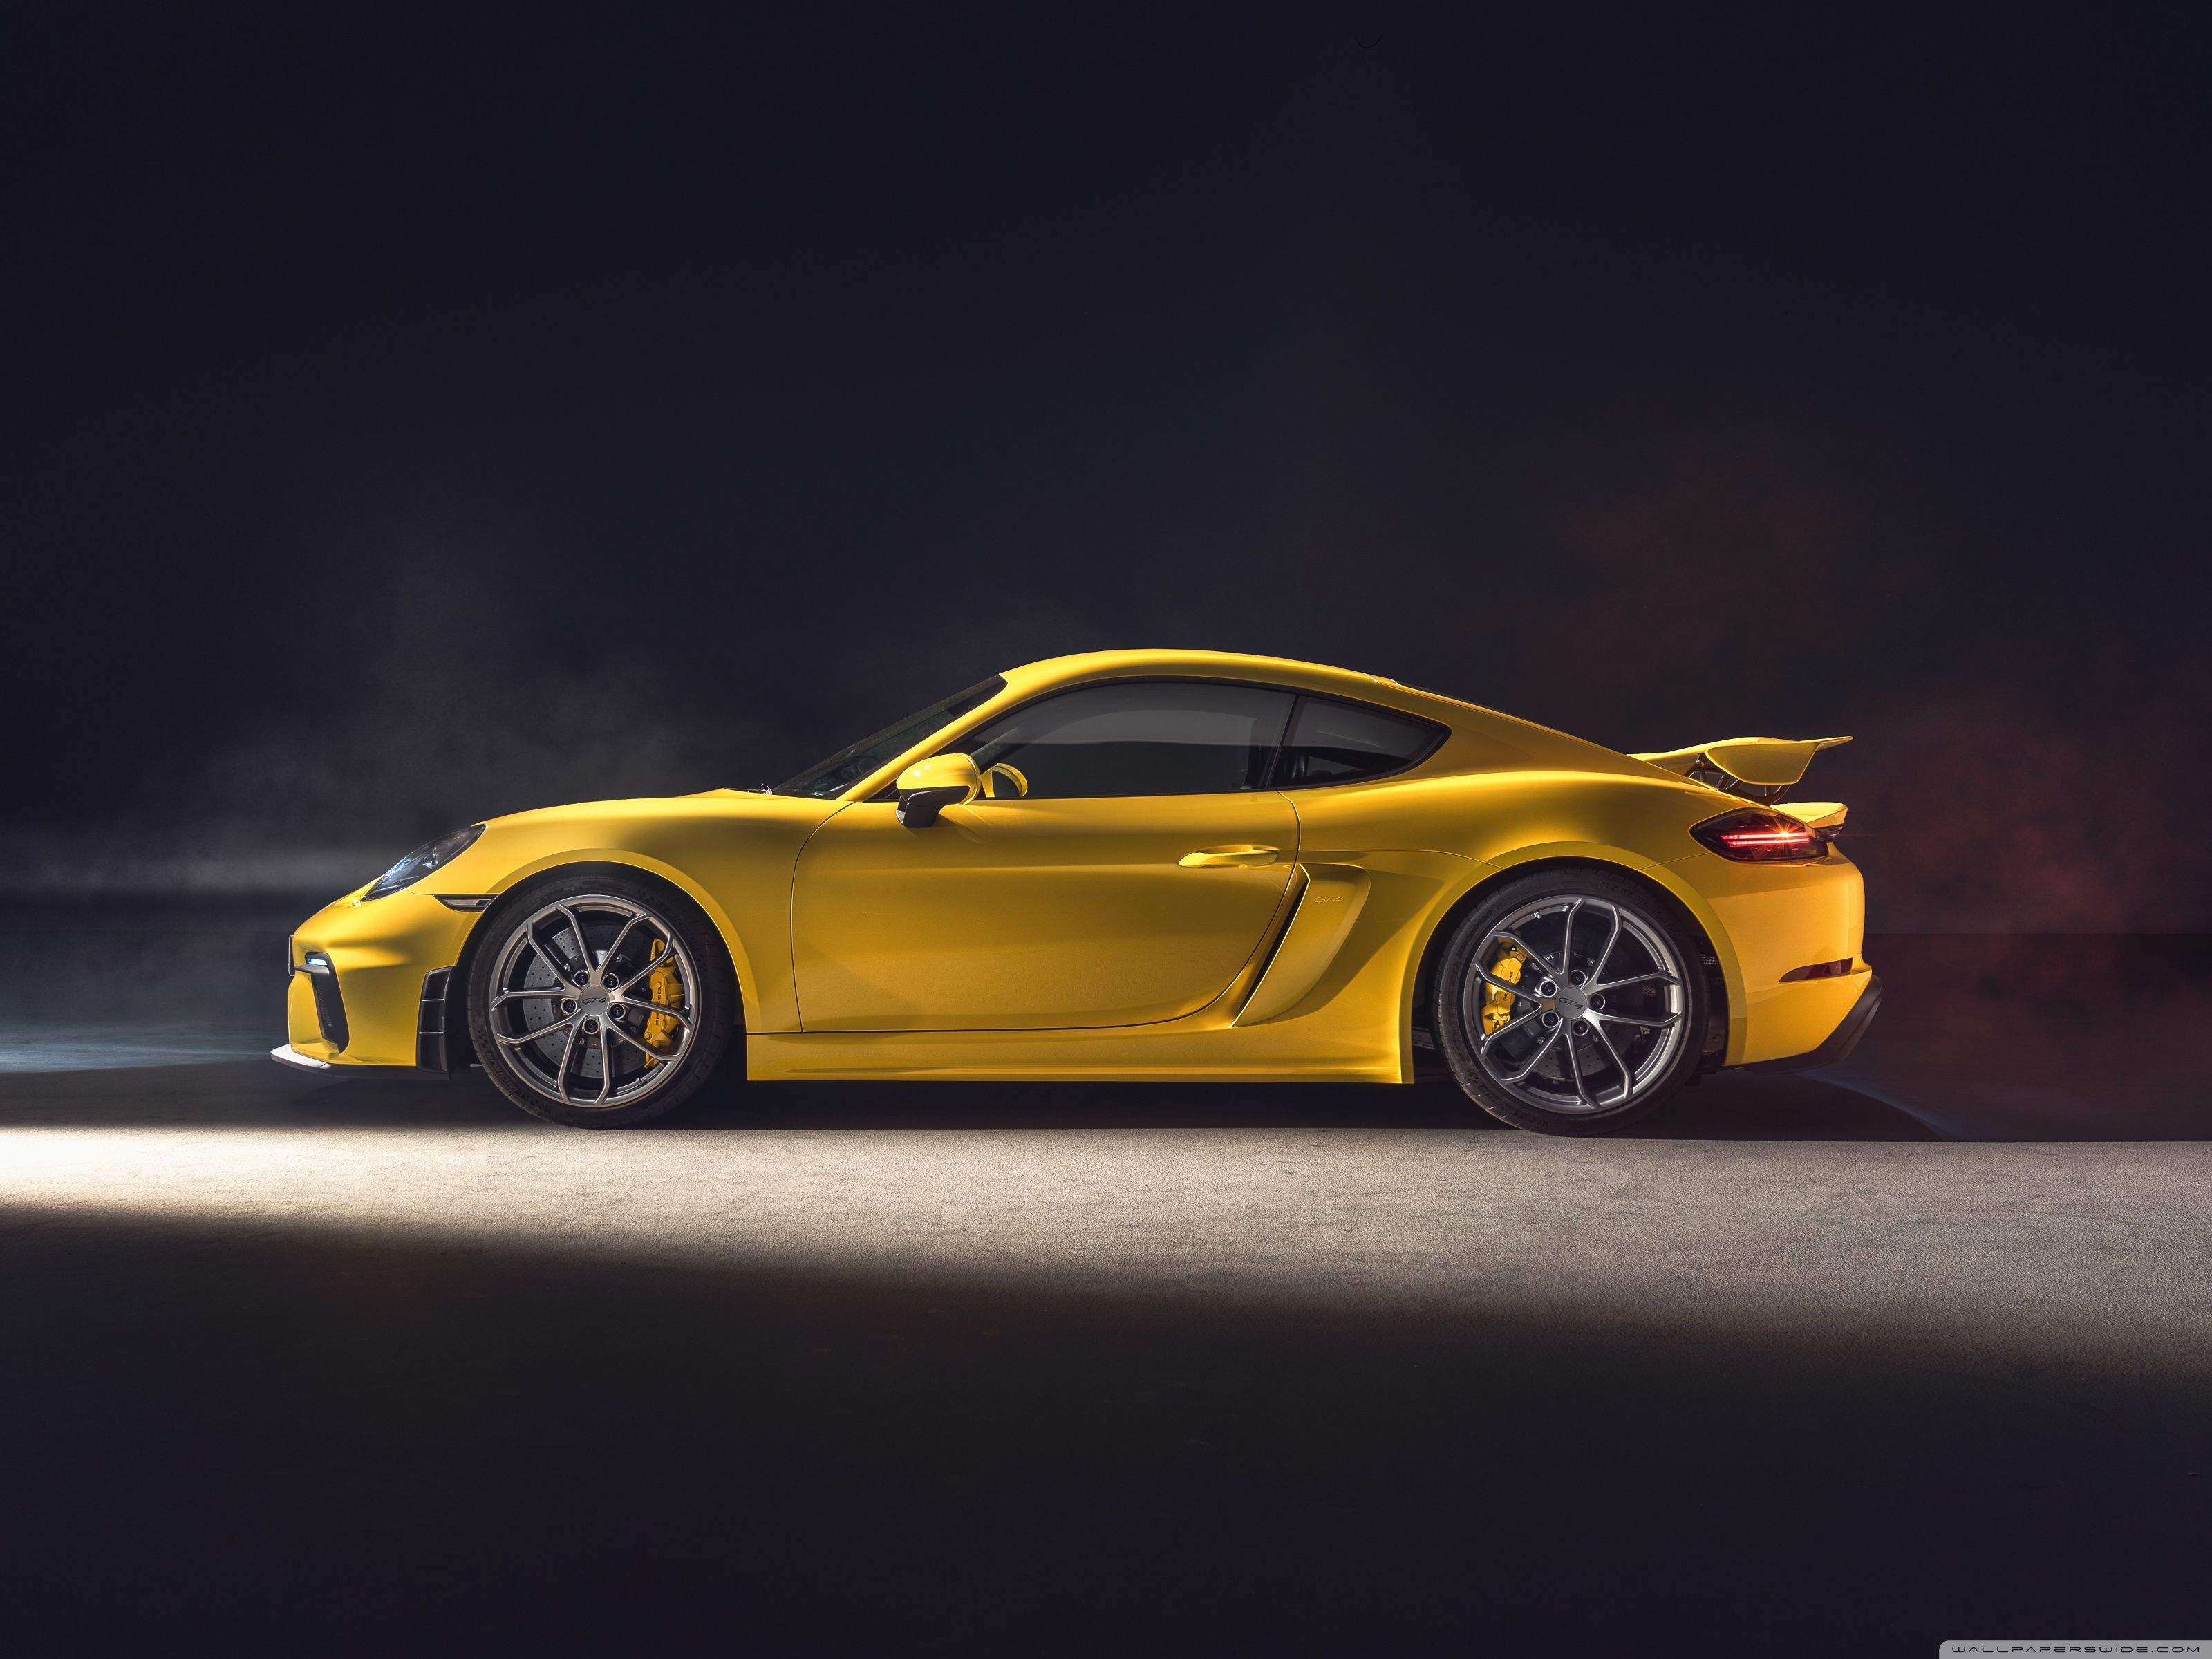 2019 Yellow Porsche 718 Cayman GT4 Sports Car Wallpaper